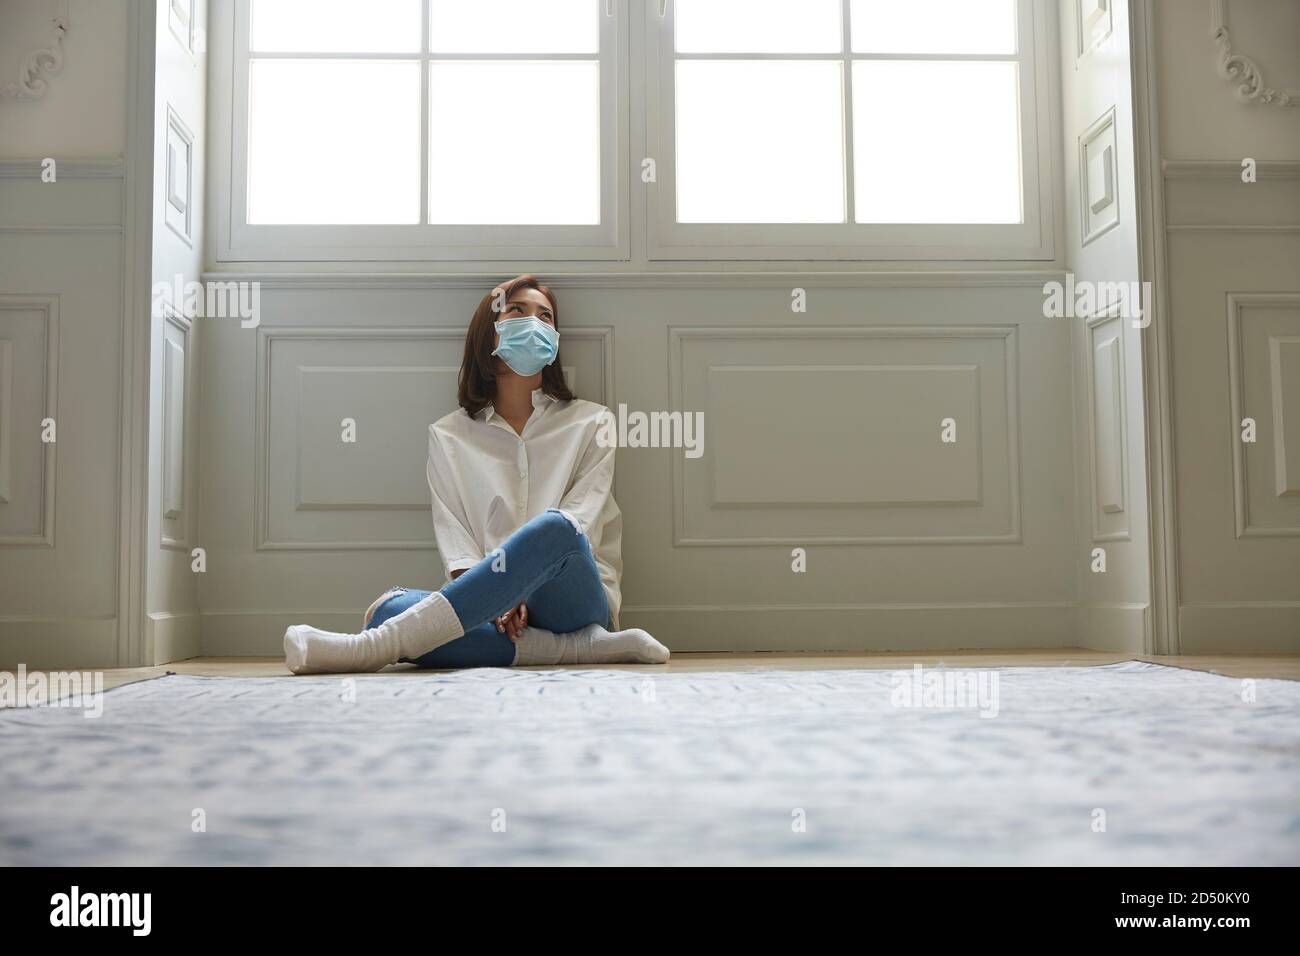 mujer asiática joven en cuarentena en casa usando máscara facial sentado en las piernas del piso se cruzó con un aspecto triste y deprimido Foto de stock